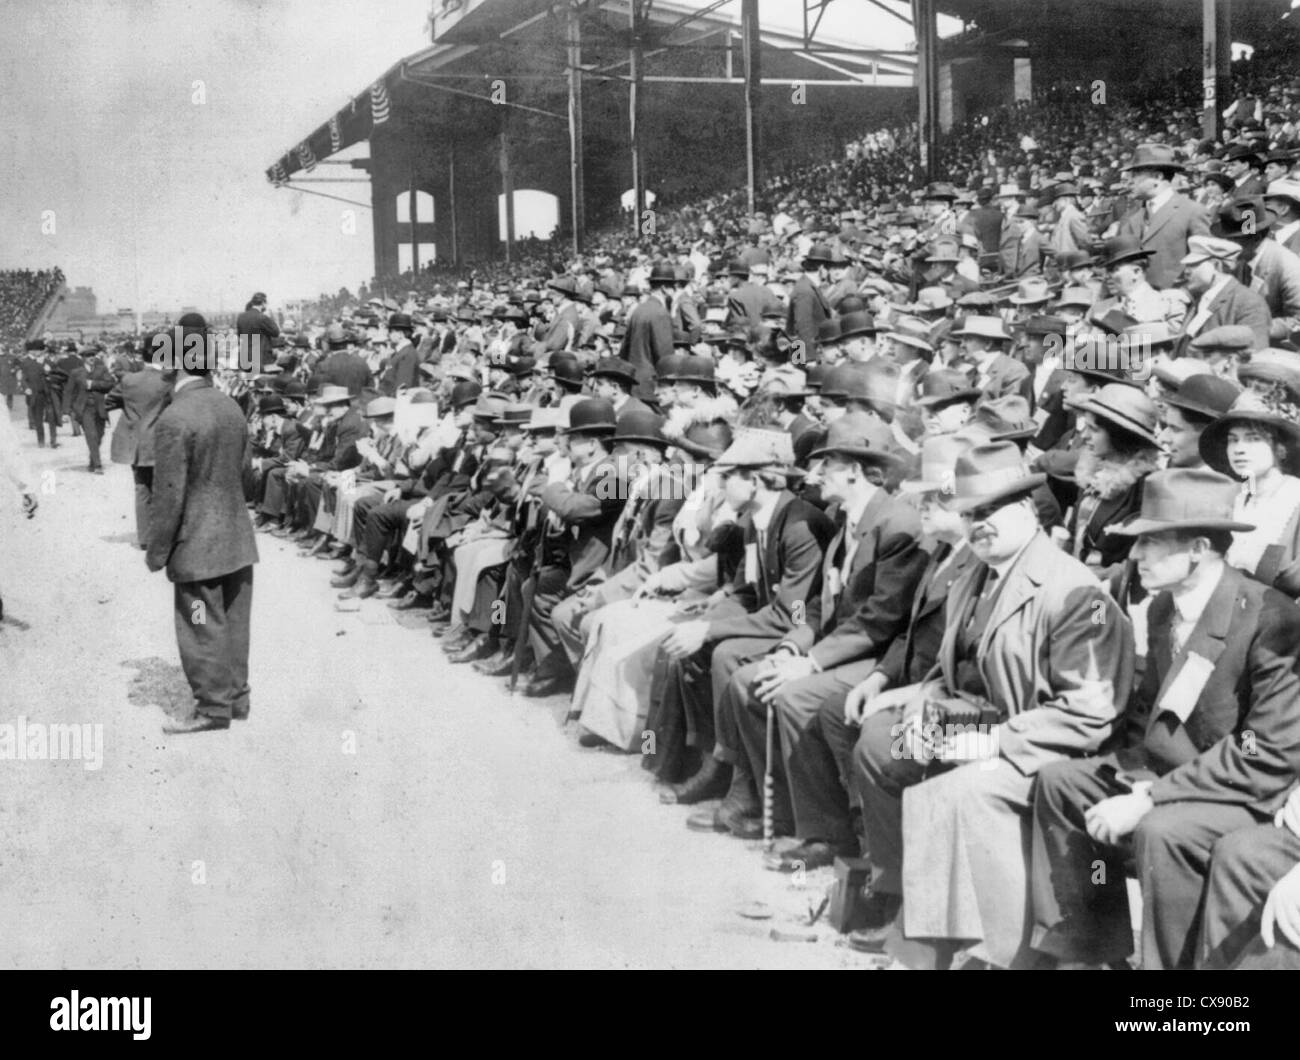 Les fans de baseball - Chicago White Sox Journée au Parc, vers 1920 Banque D'Images